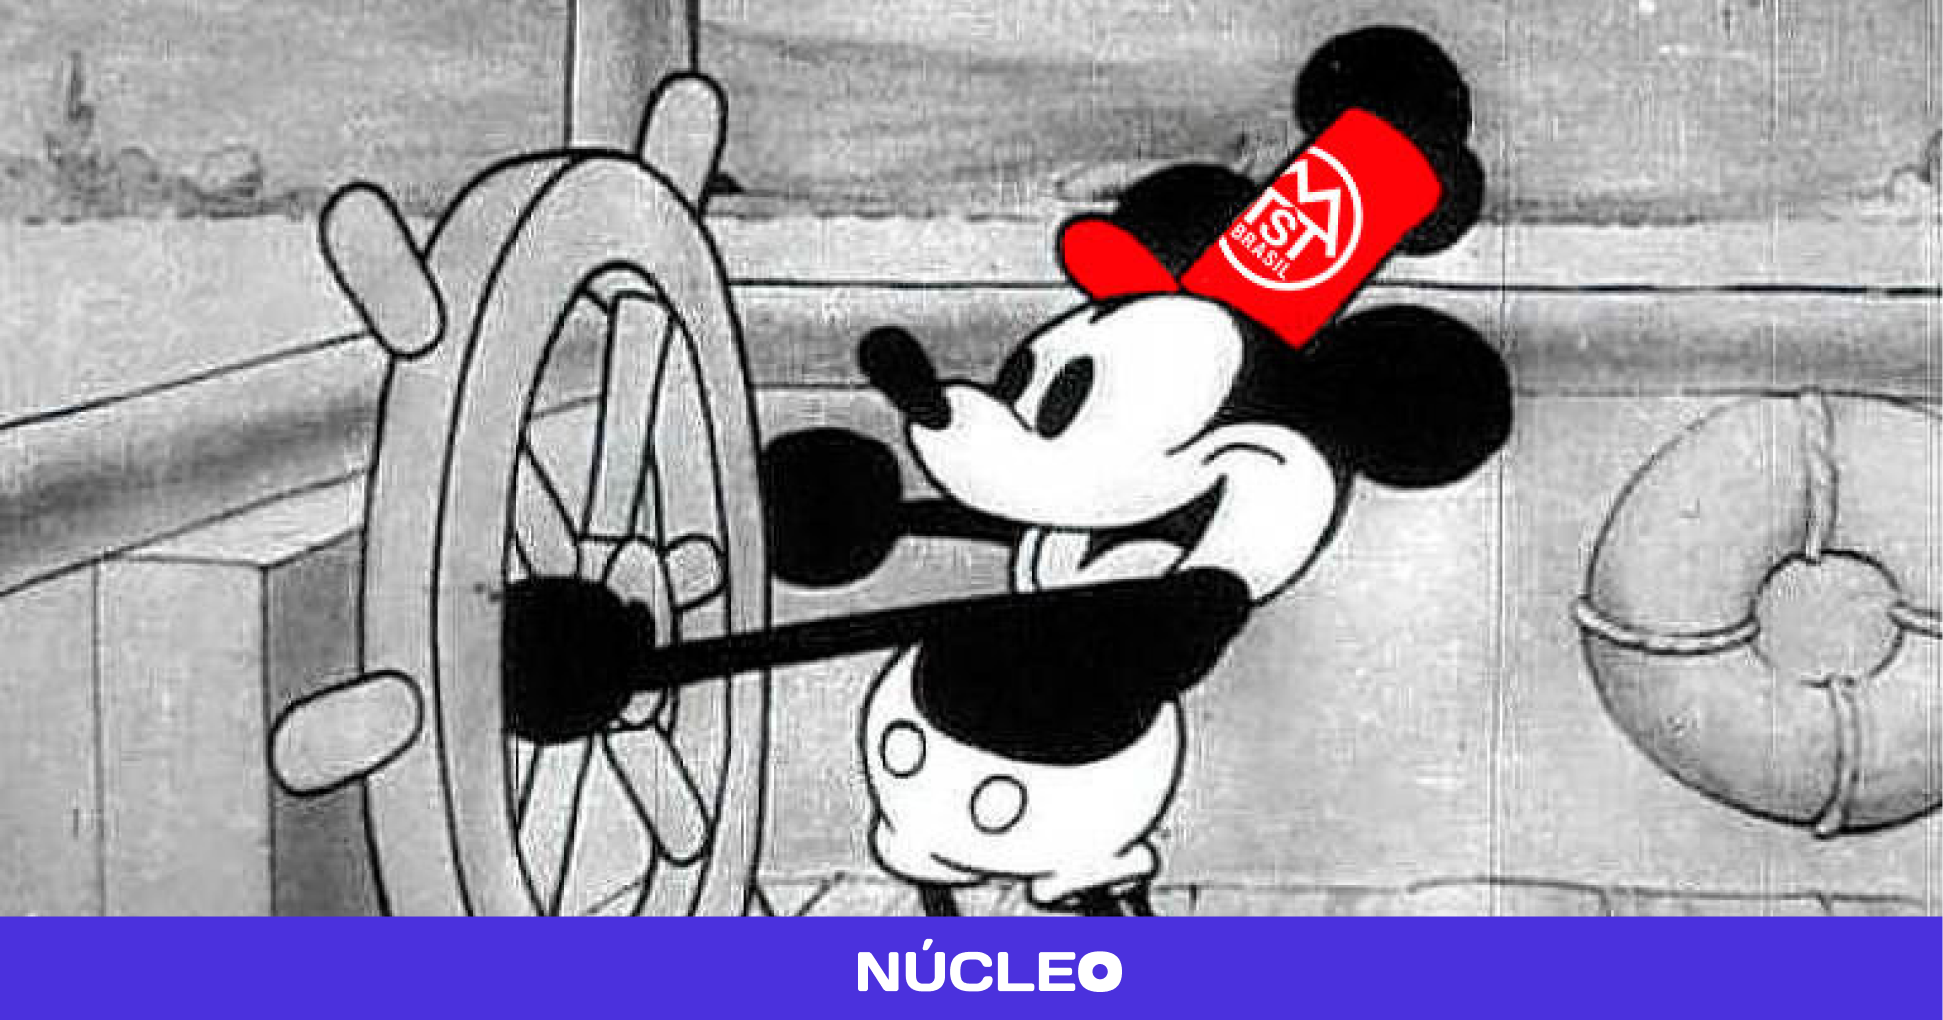 Mickey em domínio público gera memes e confusão nas redes